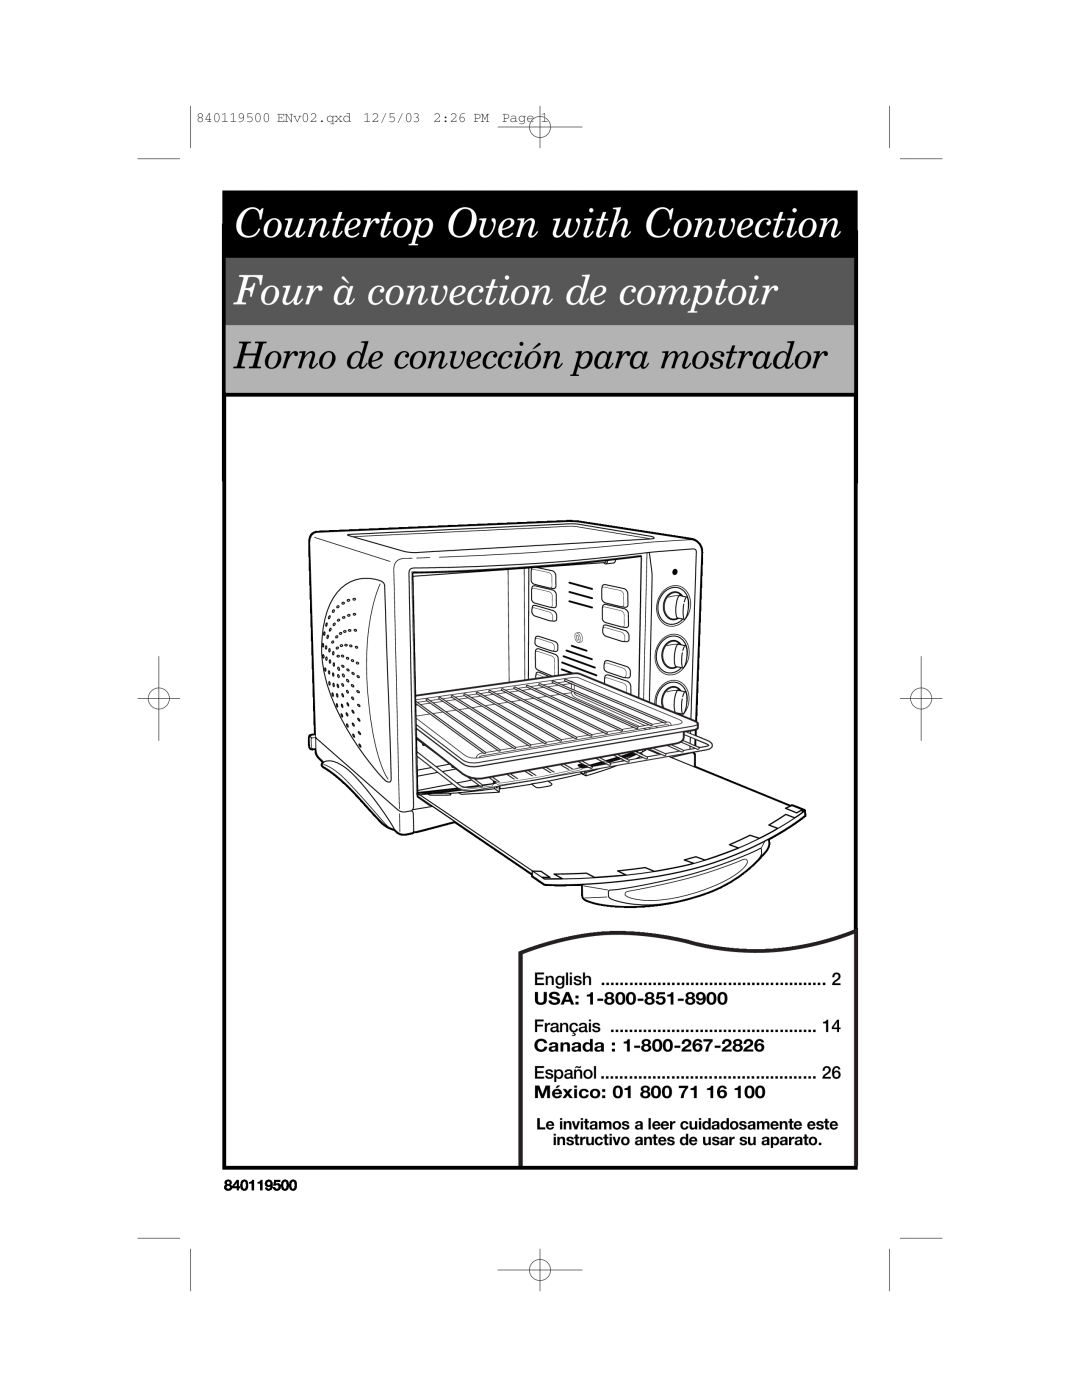 Hamilton Beach 31195 manual Usa, Canada, México 01, Countertop Oven with Convection, Four à convection de comptoir 